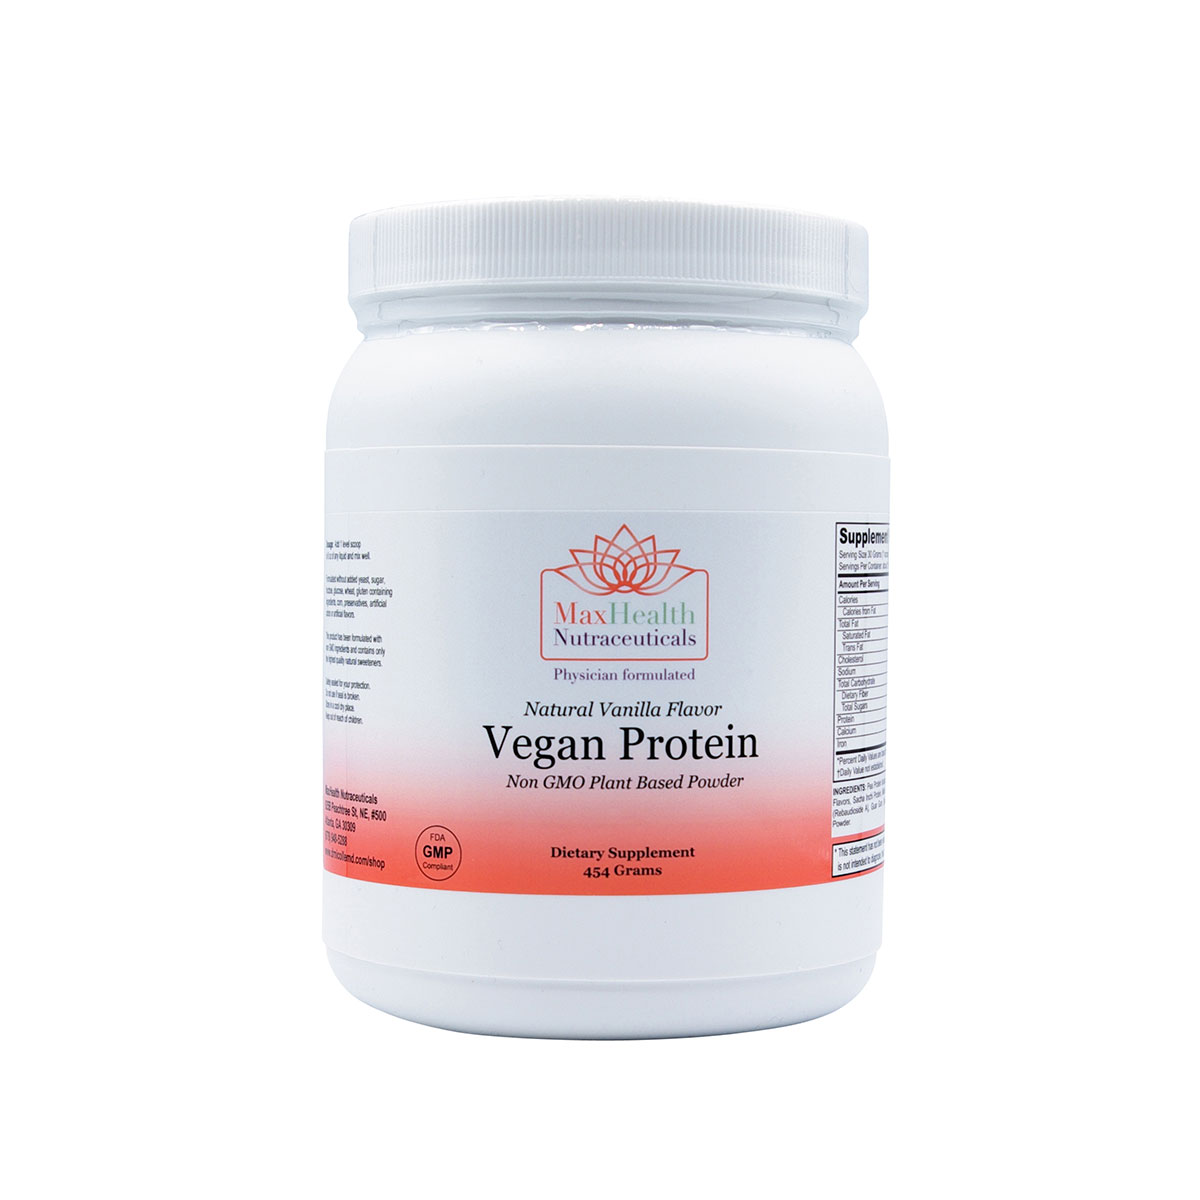 11Vanilla Flavor Vegan Protein Non GMO Plant Based Powder